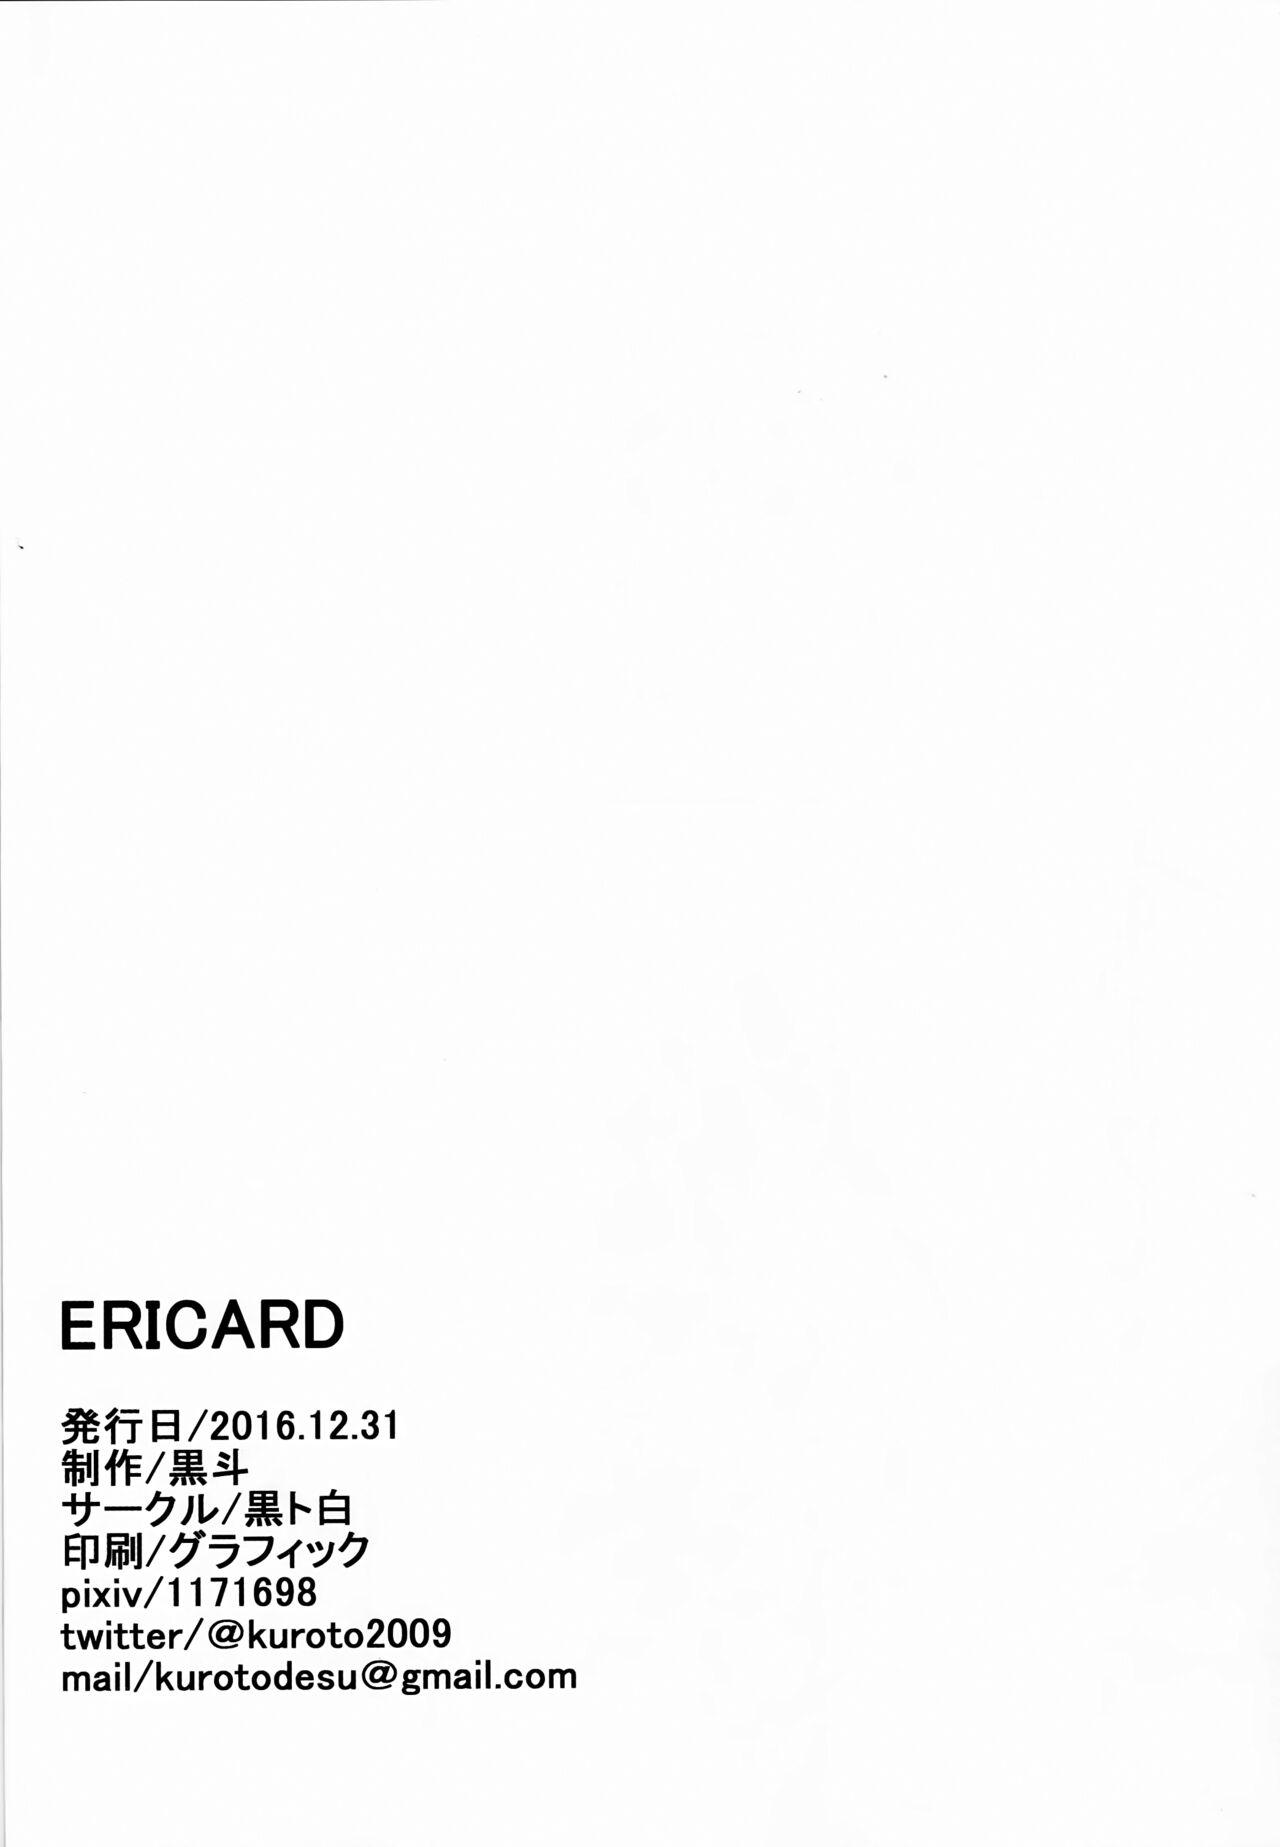 ERICARD 20